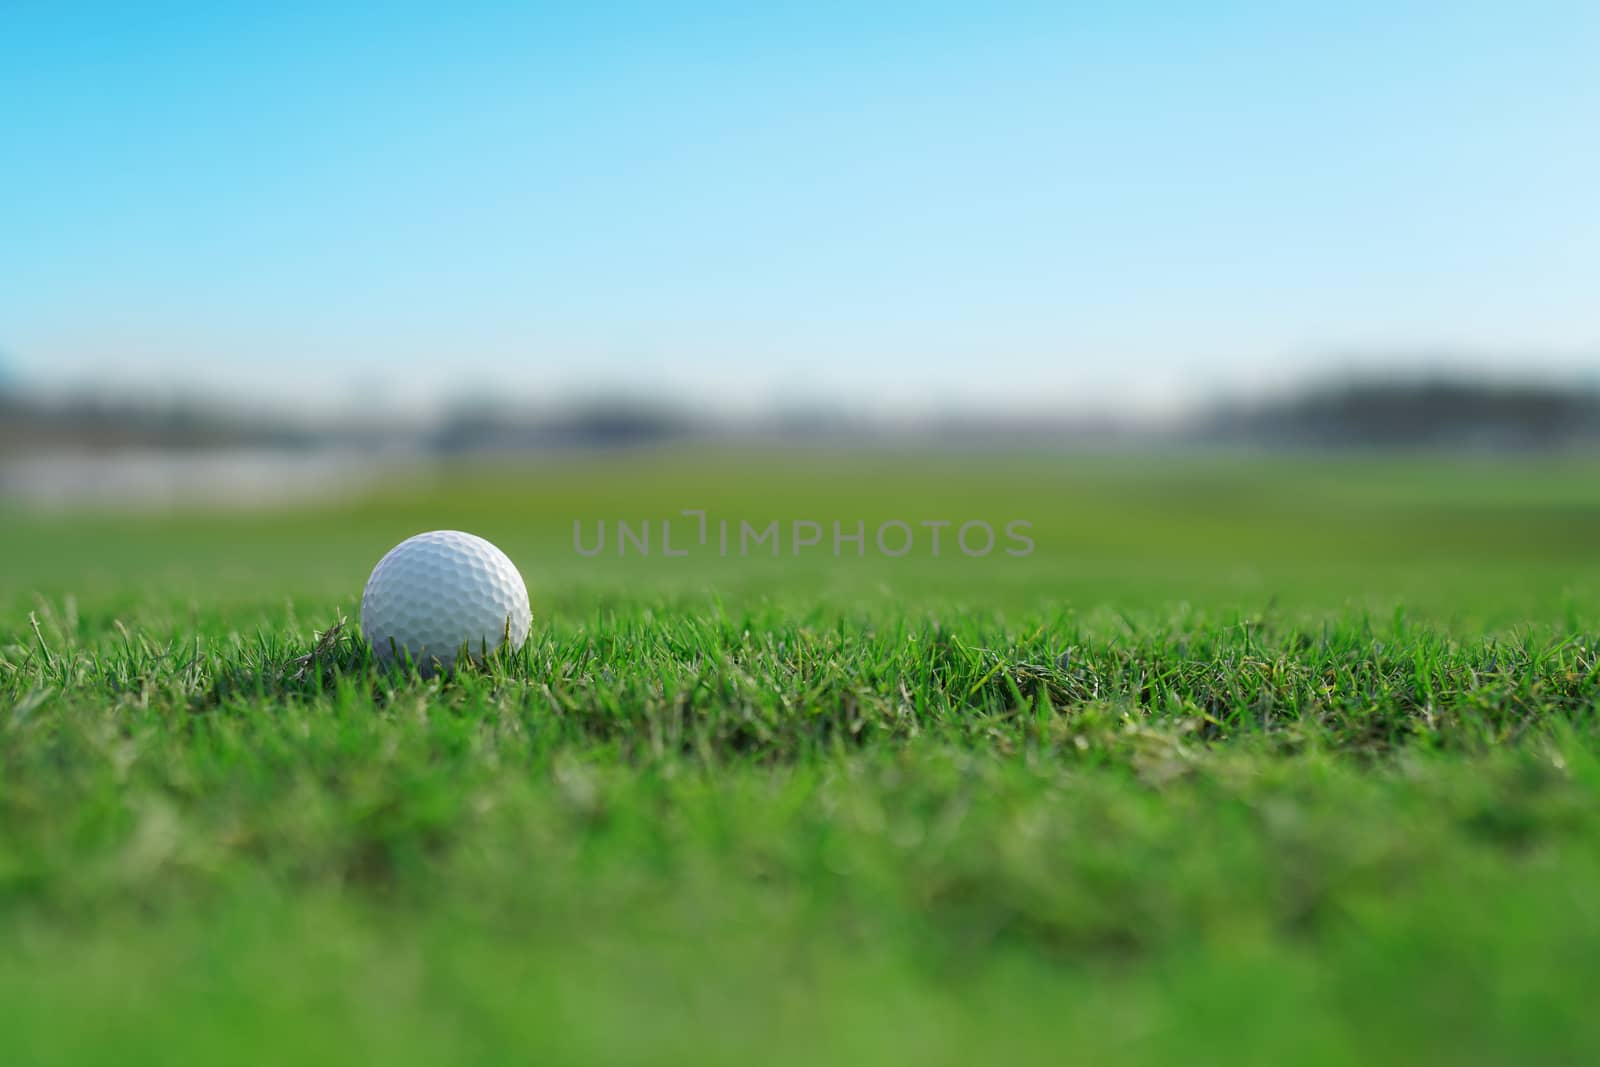 golf ball on a green fairway grass